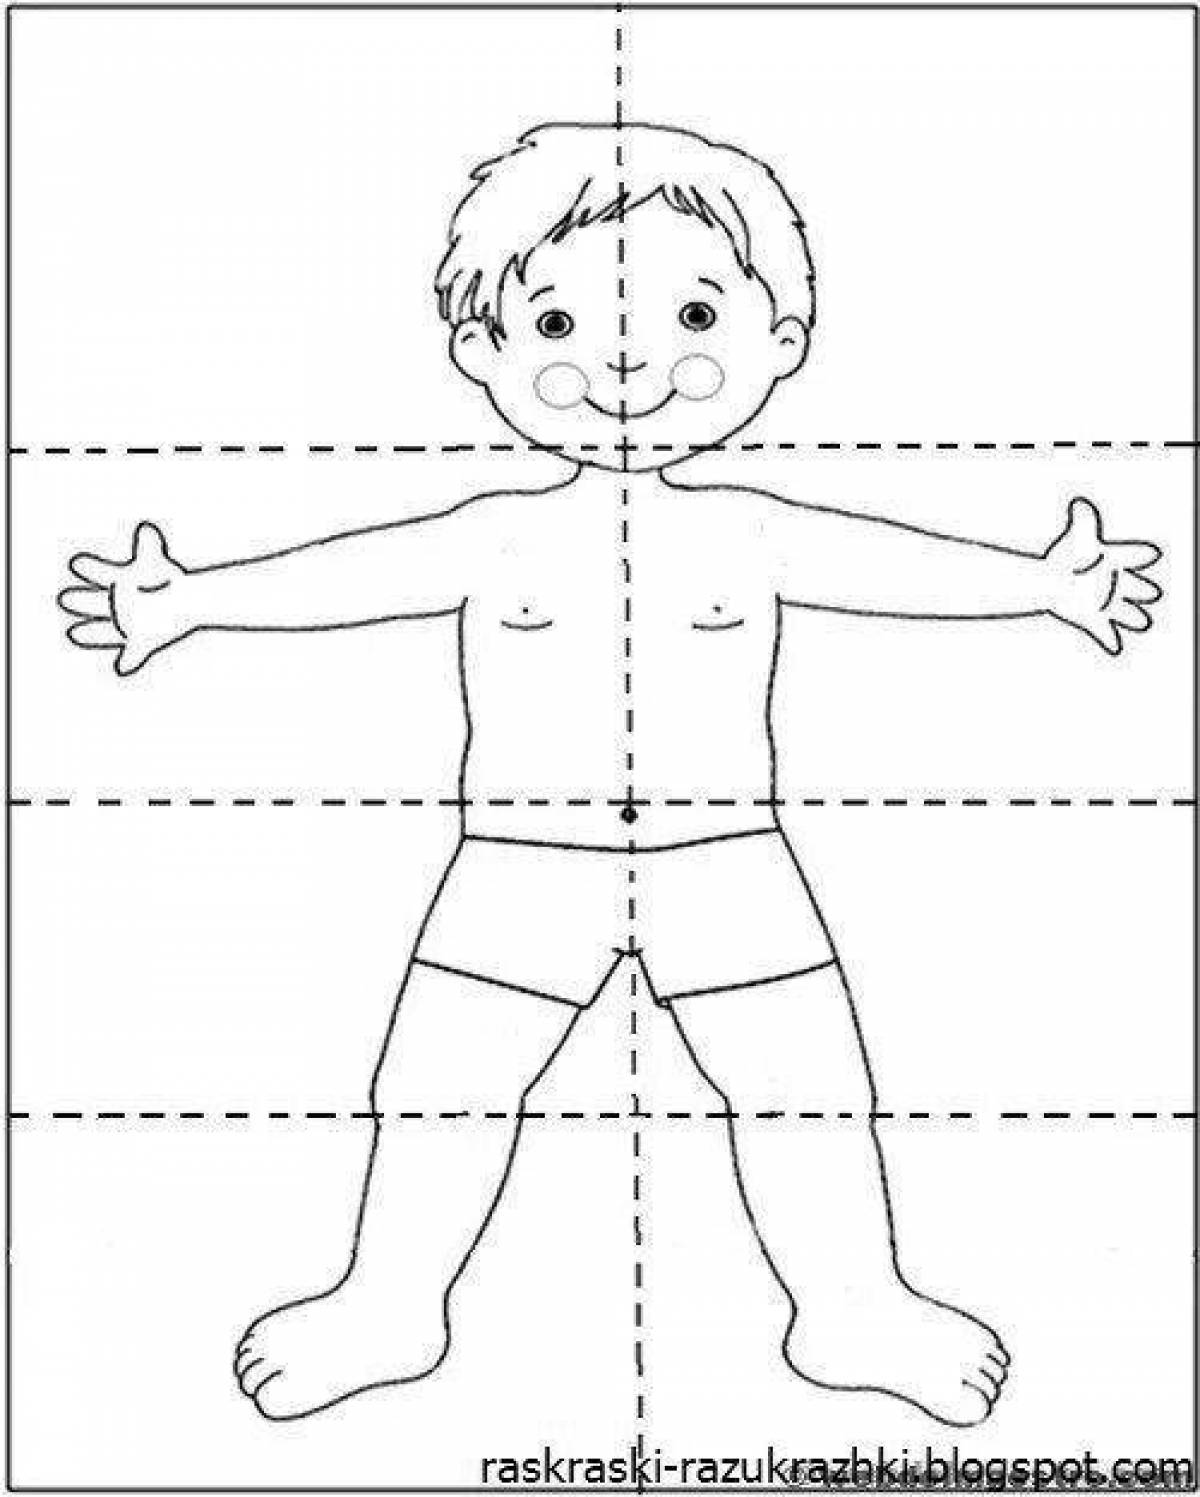 Схема человека для детей. Части тела человека задания. Части тела человека раскраска. Человек части тела для дошкольников. Тело человека задания для детей.